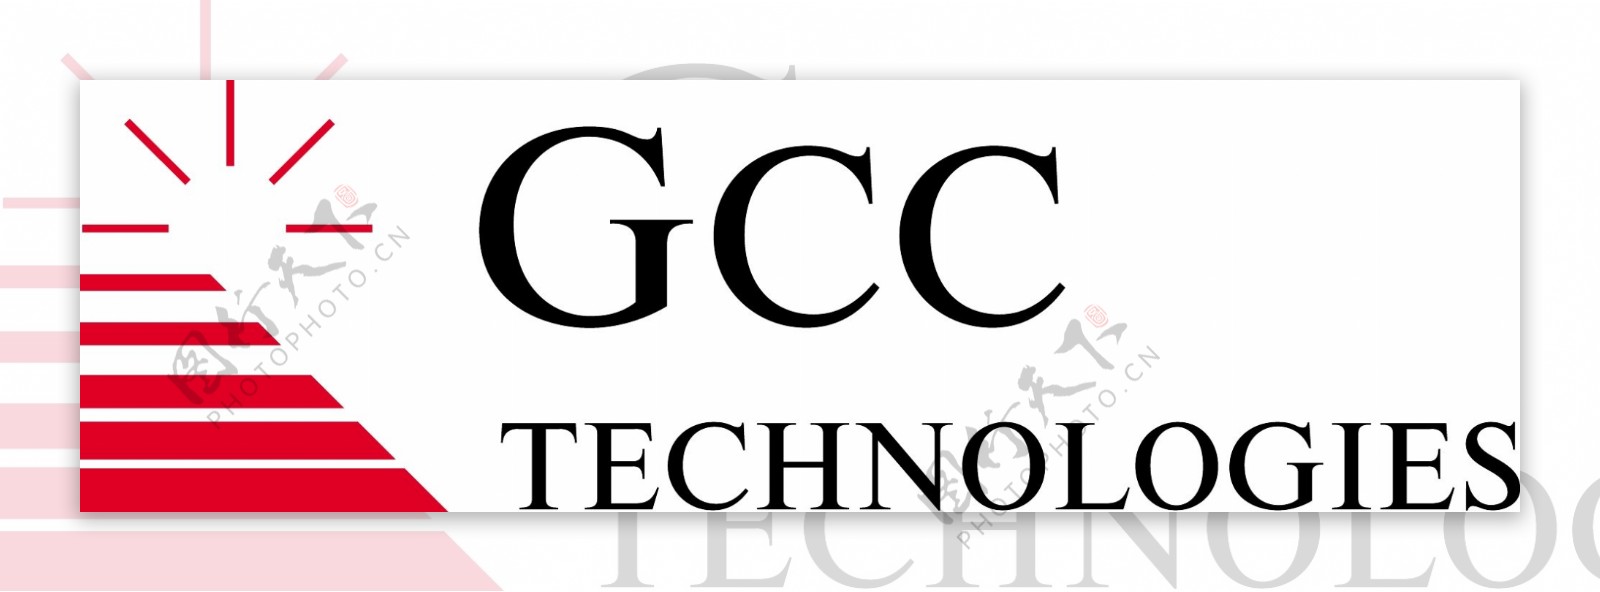 GCC技术标志